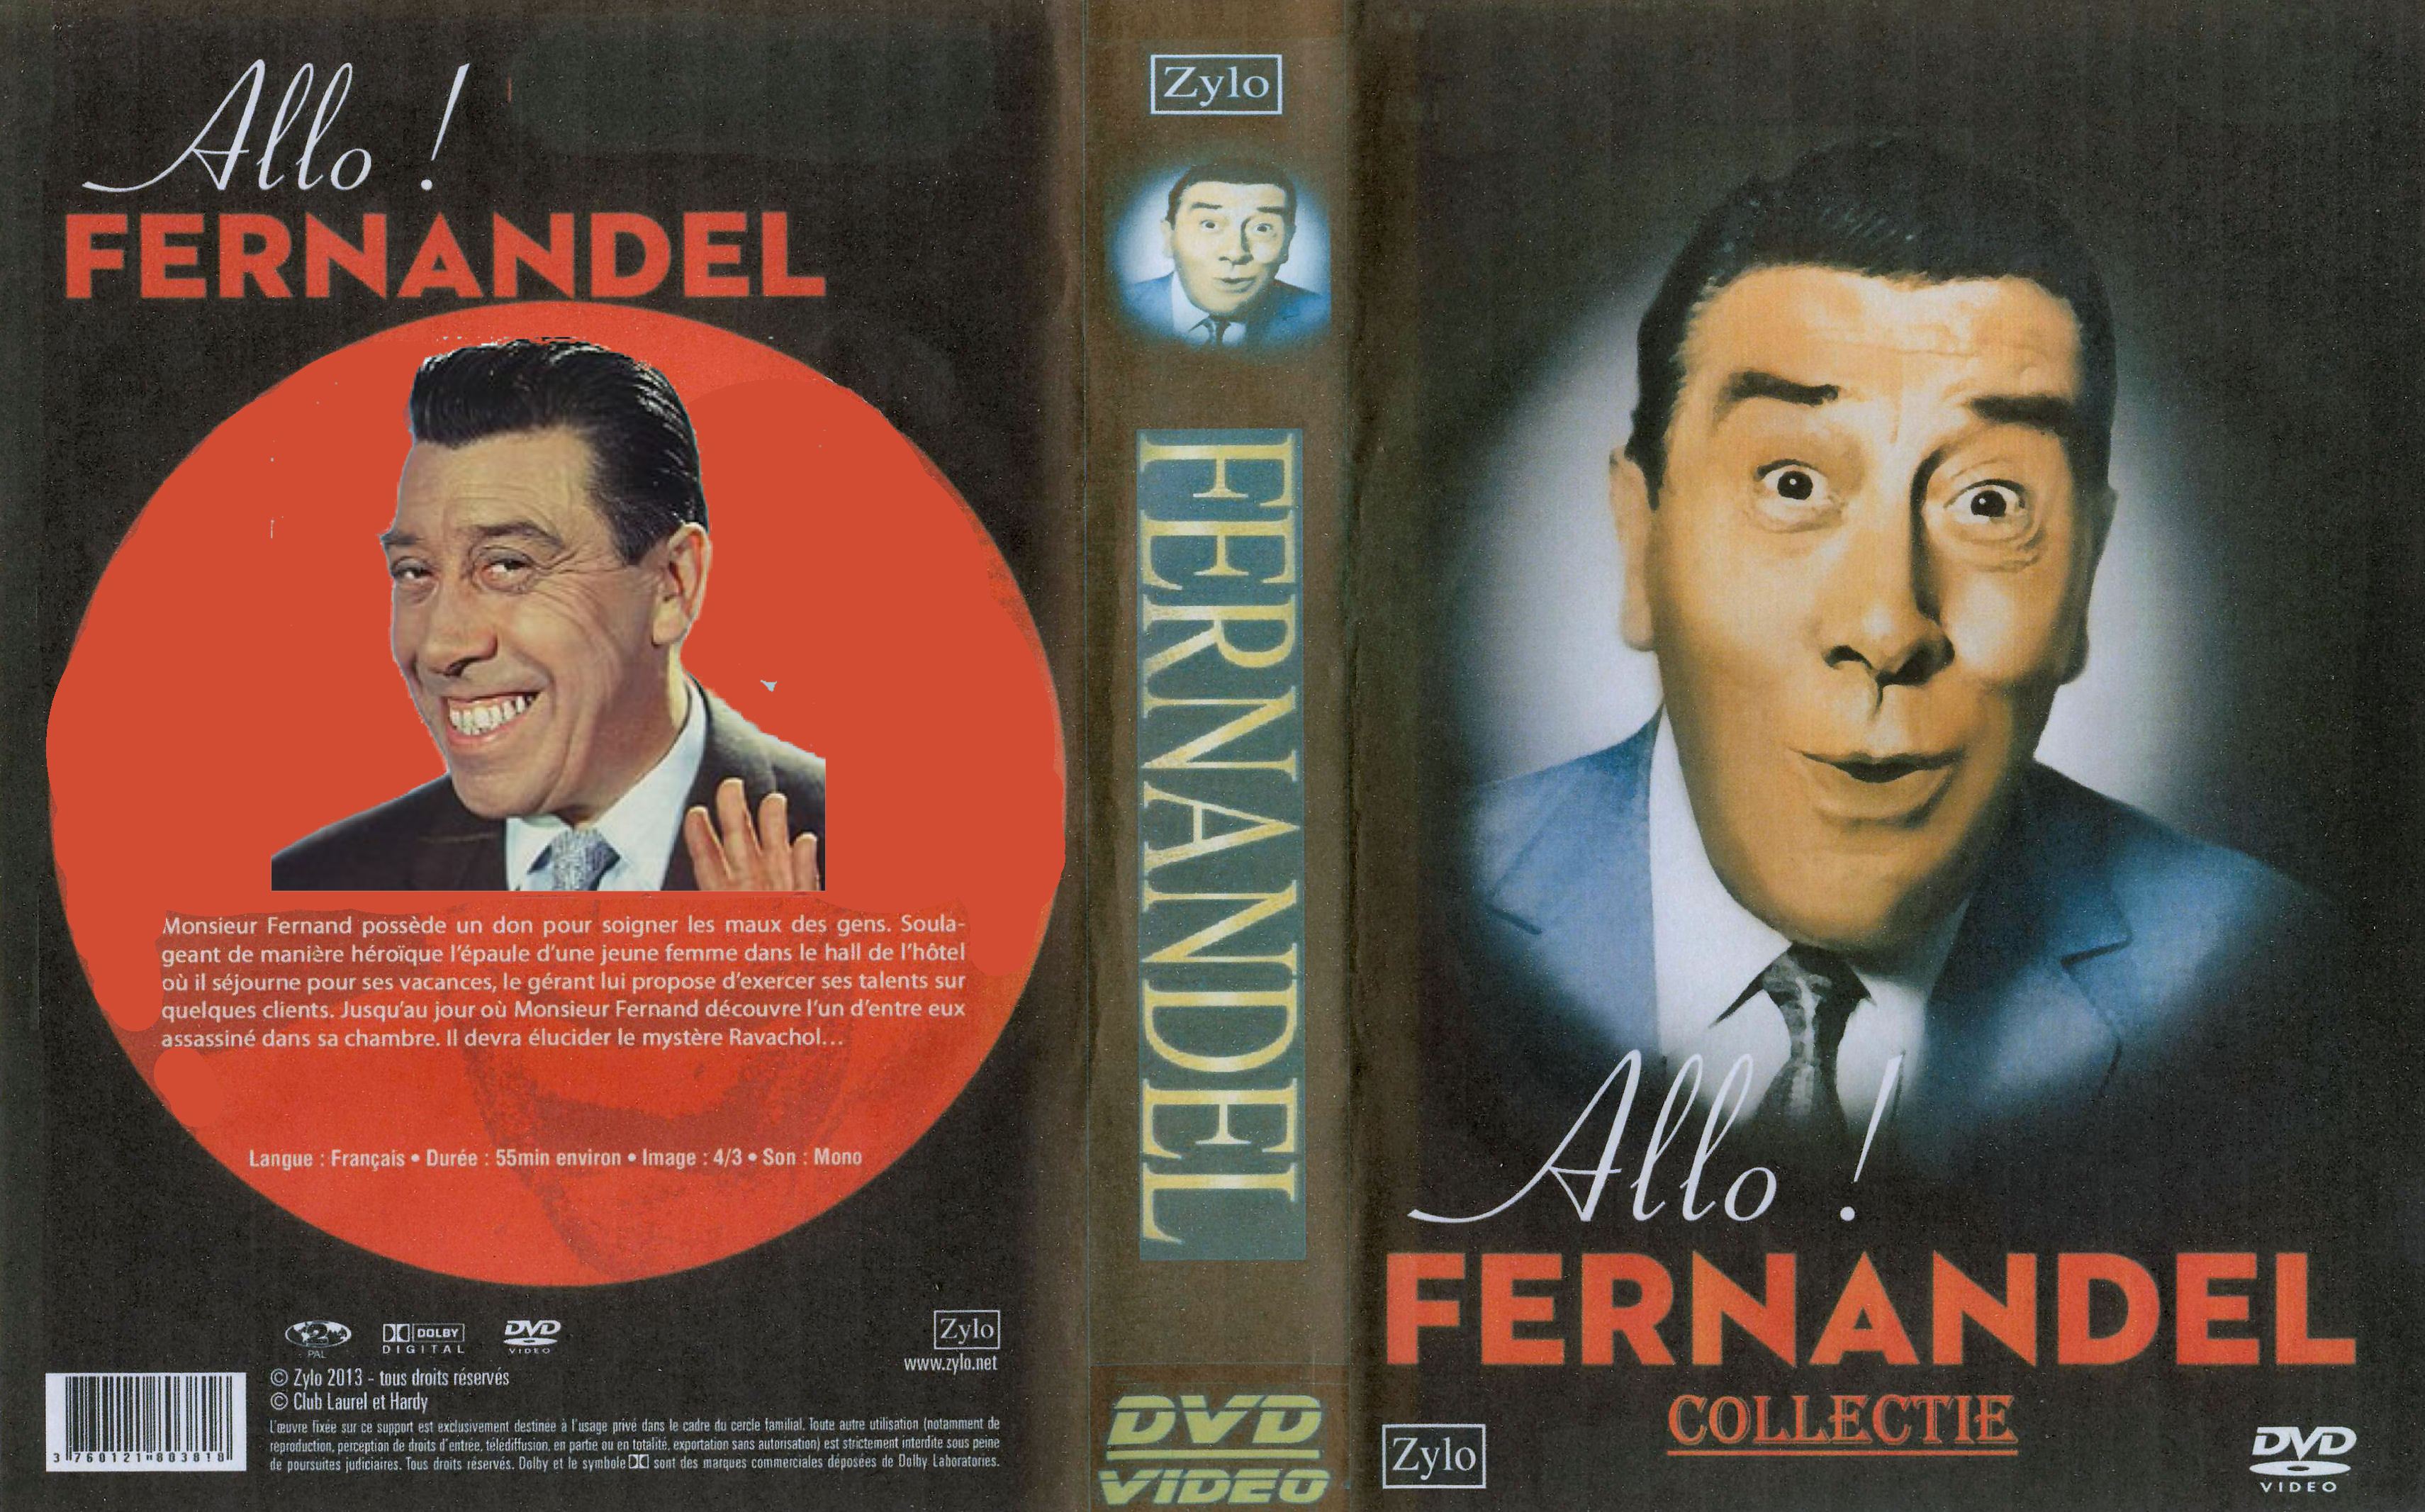 Fernandel Collectie (14 DvD's) - DvD 1